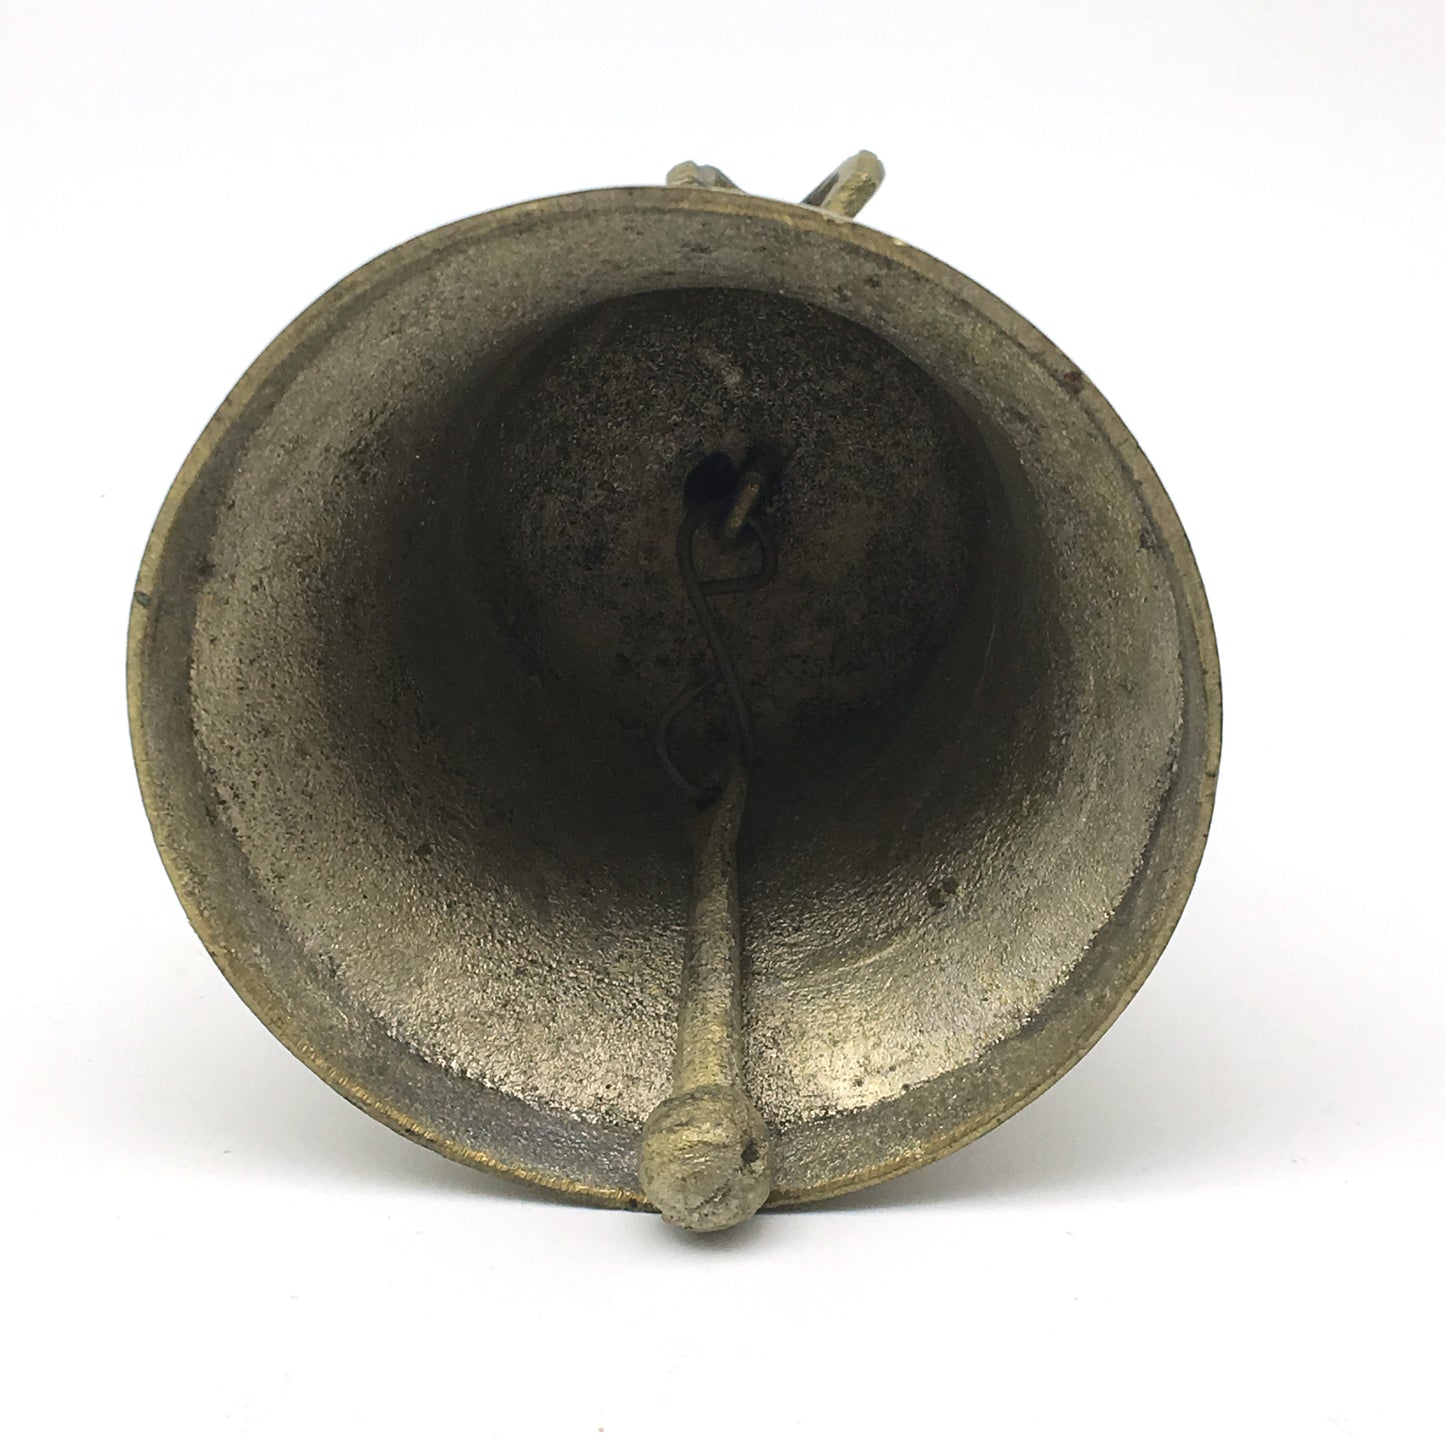 Vintage Handcrafted Tibetan Buddhist Ghanta Bell with Dorje Handle 6.8" - Montecinos Ethnic